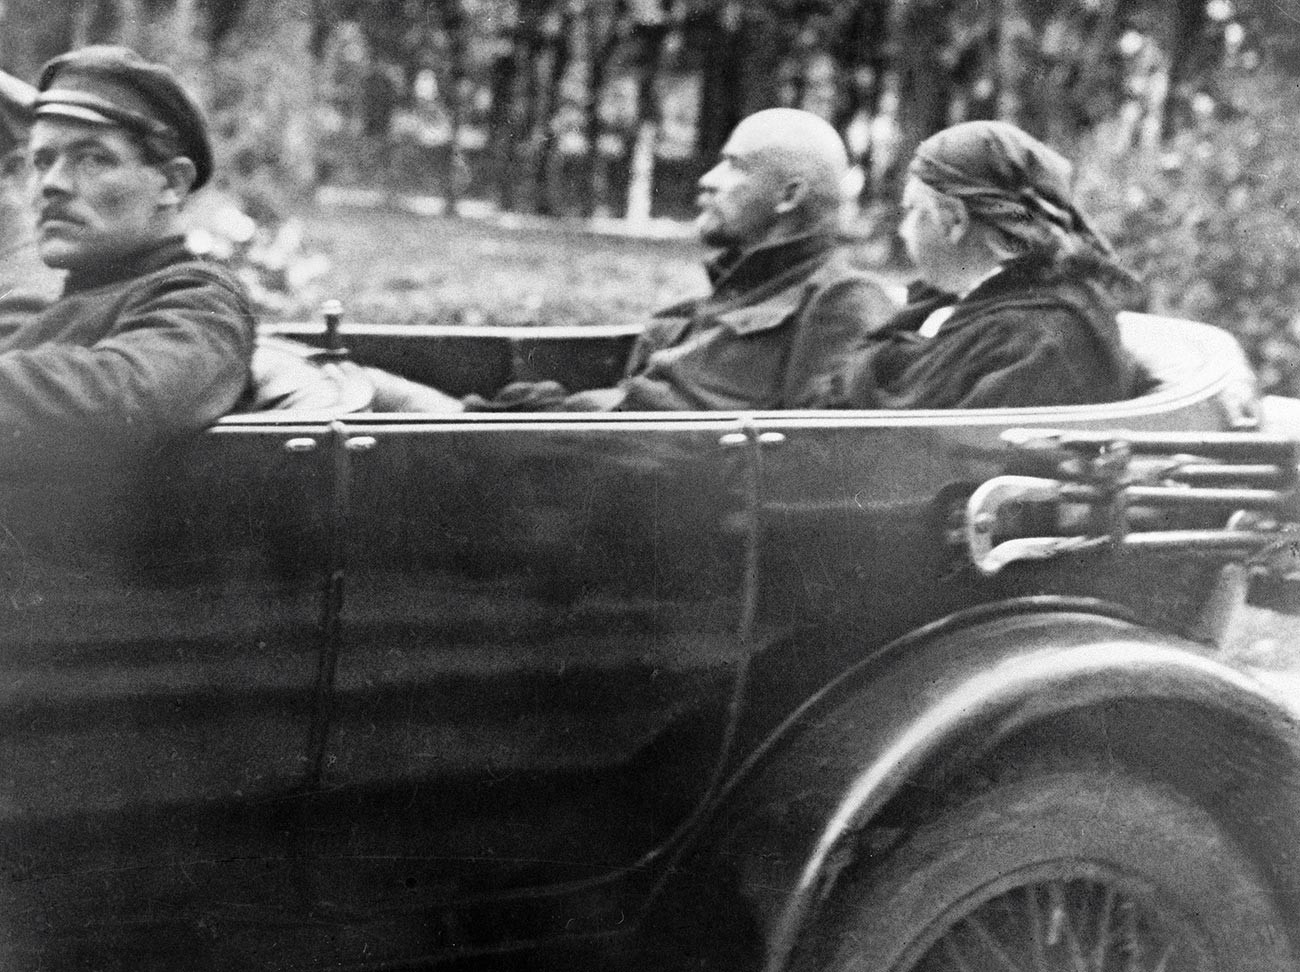 ウラジーミル・レーニンとナデジダ・クルプスカヤが車に乗っている